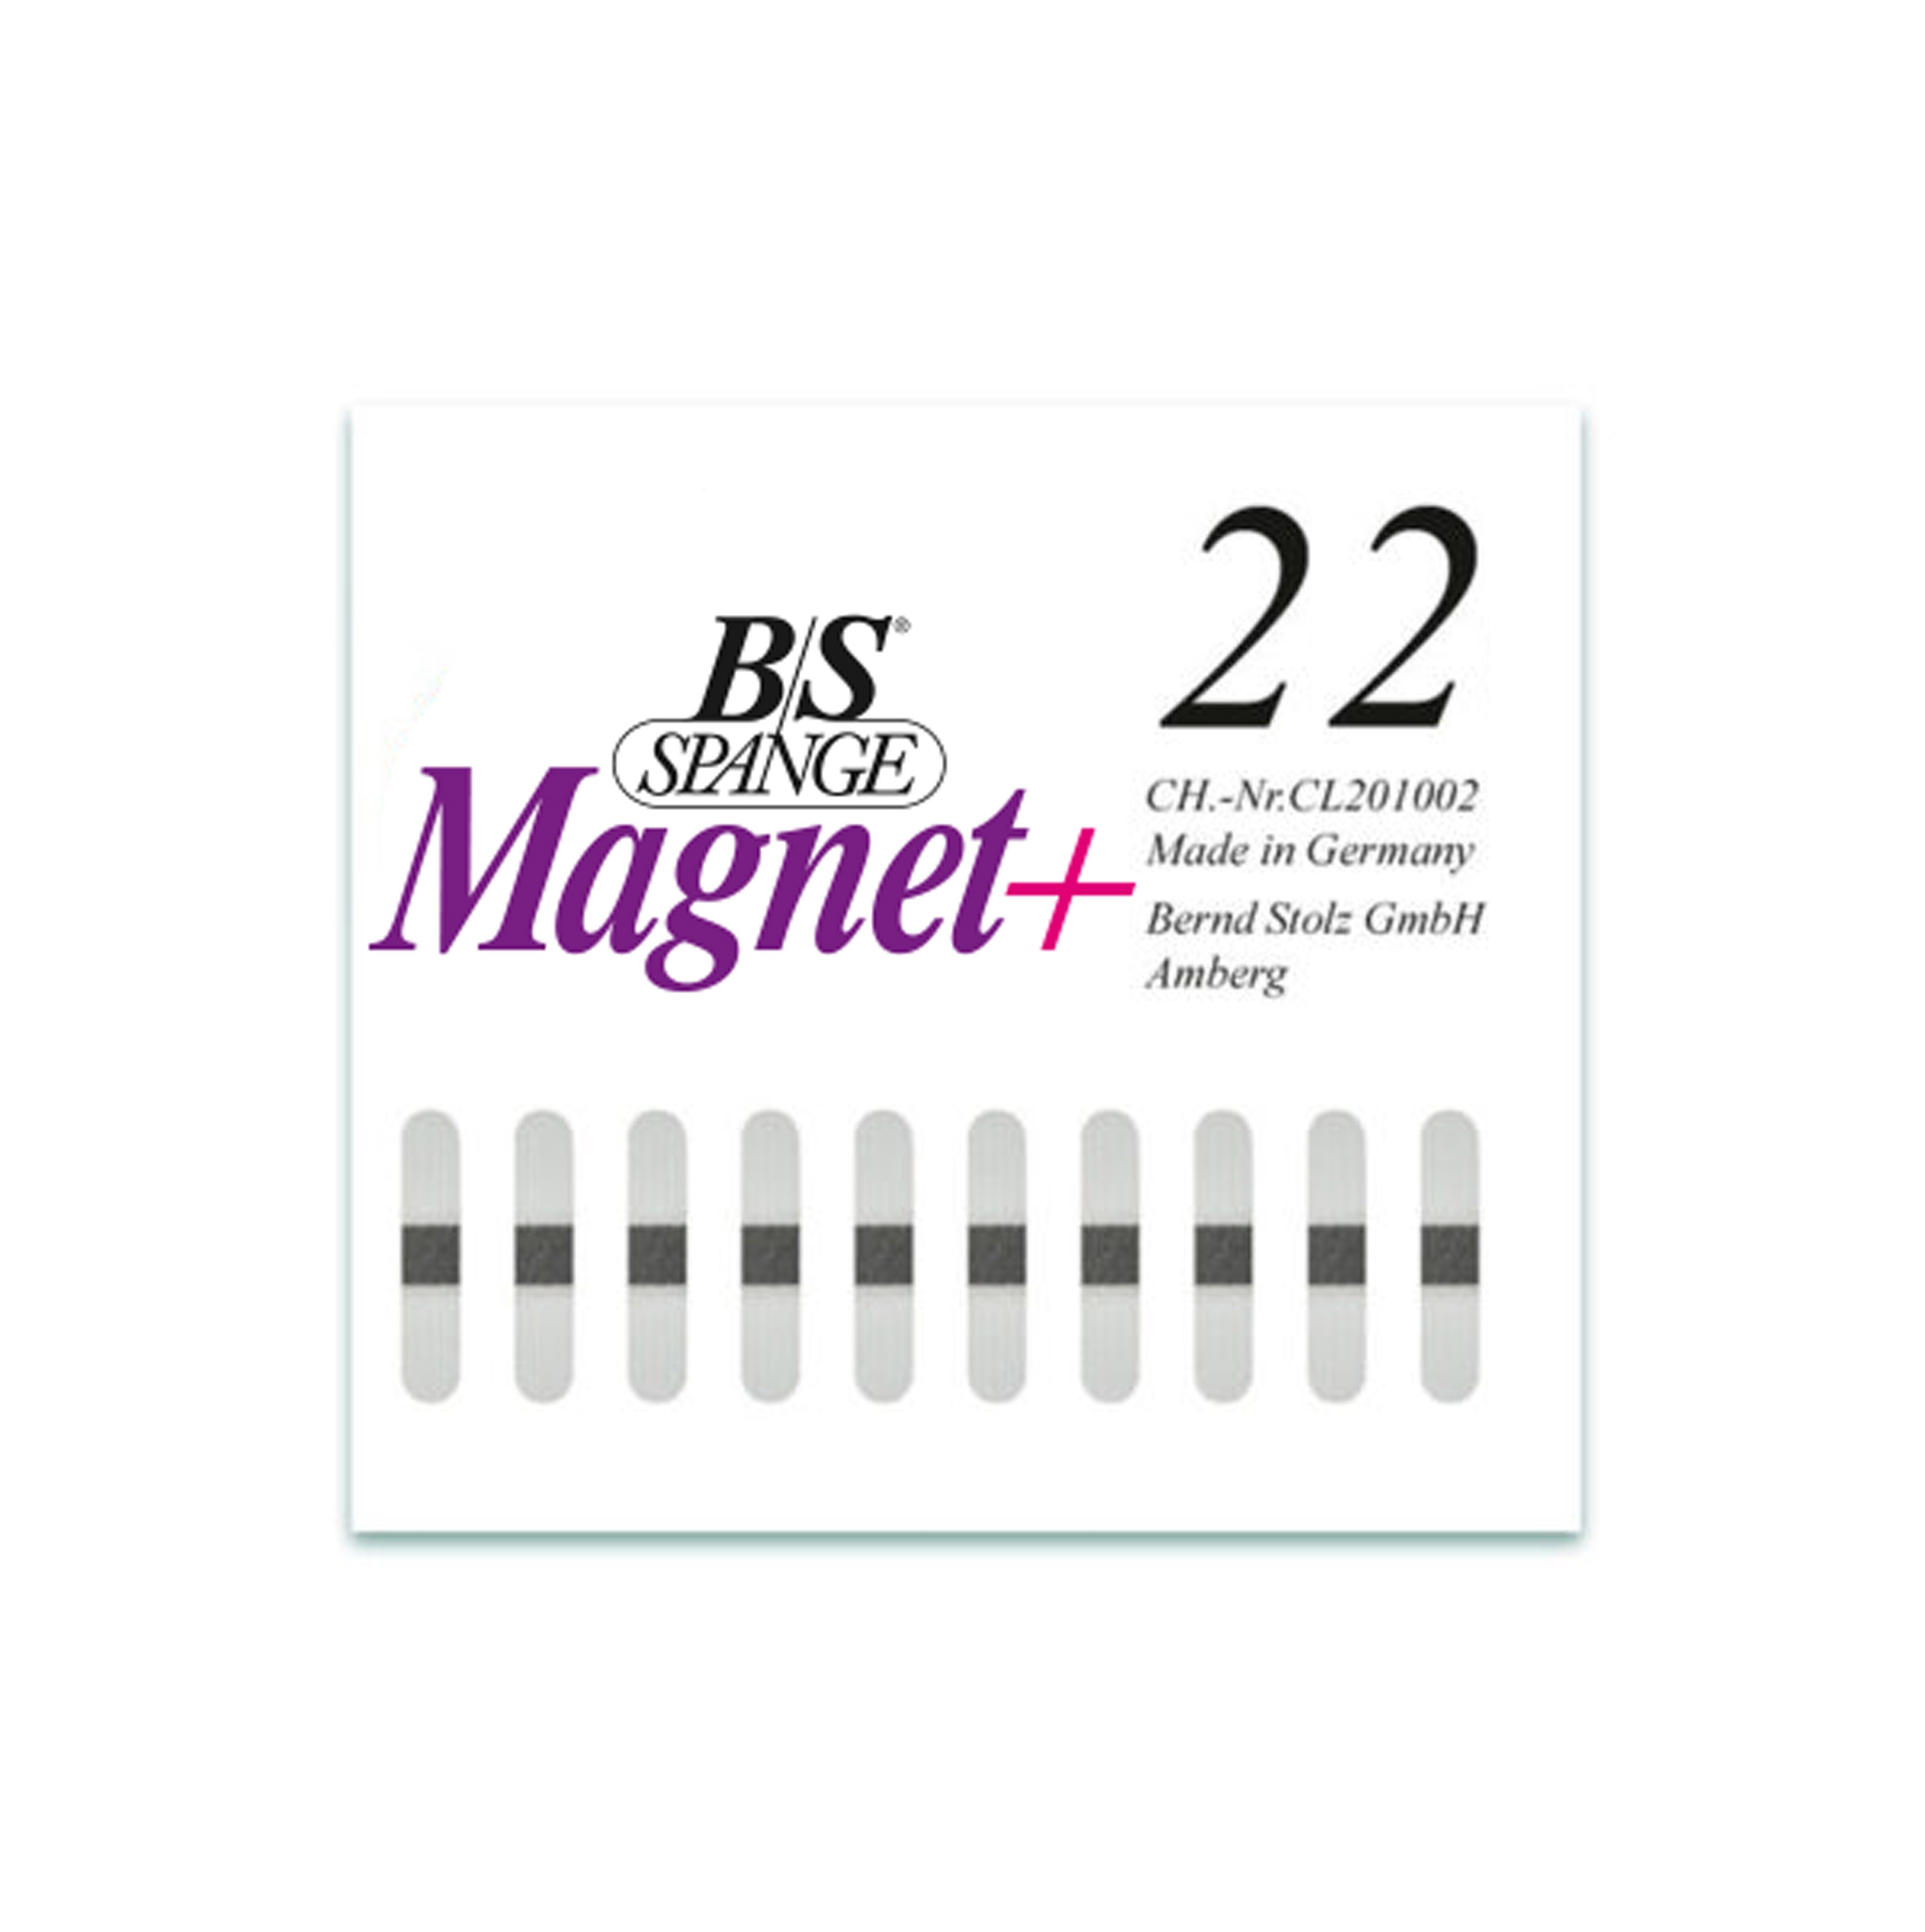 B/S Spange Magnet+ | Länge 22 Breite 4 mm 10 Stück